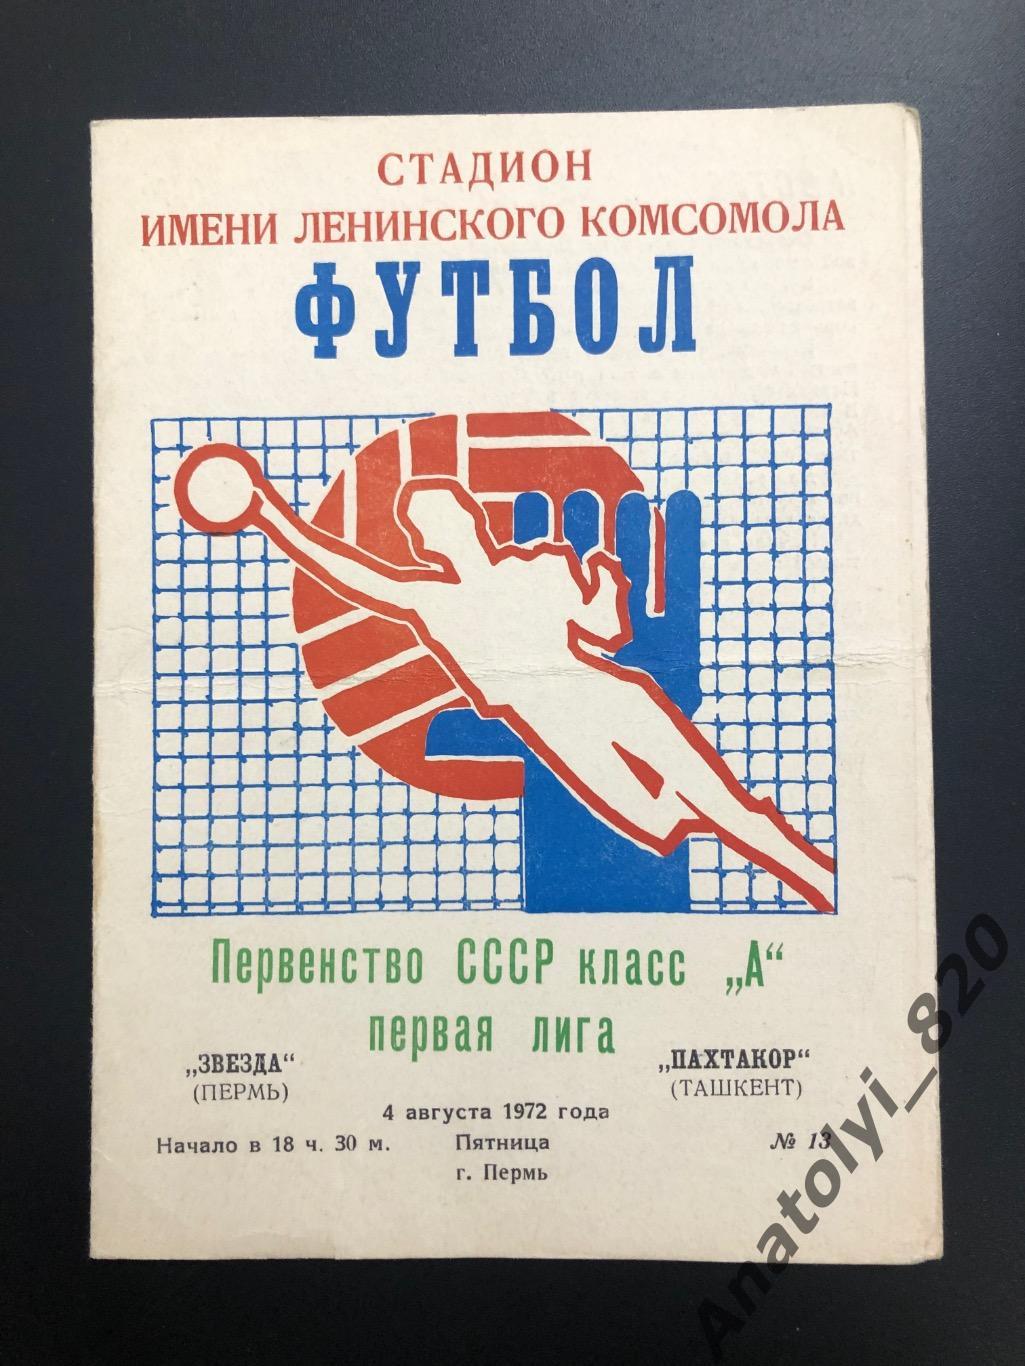 Звезда Пермь - Пактакор Ташкент, 1972 год